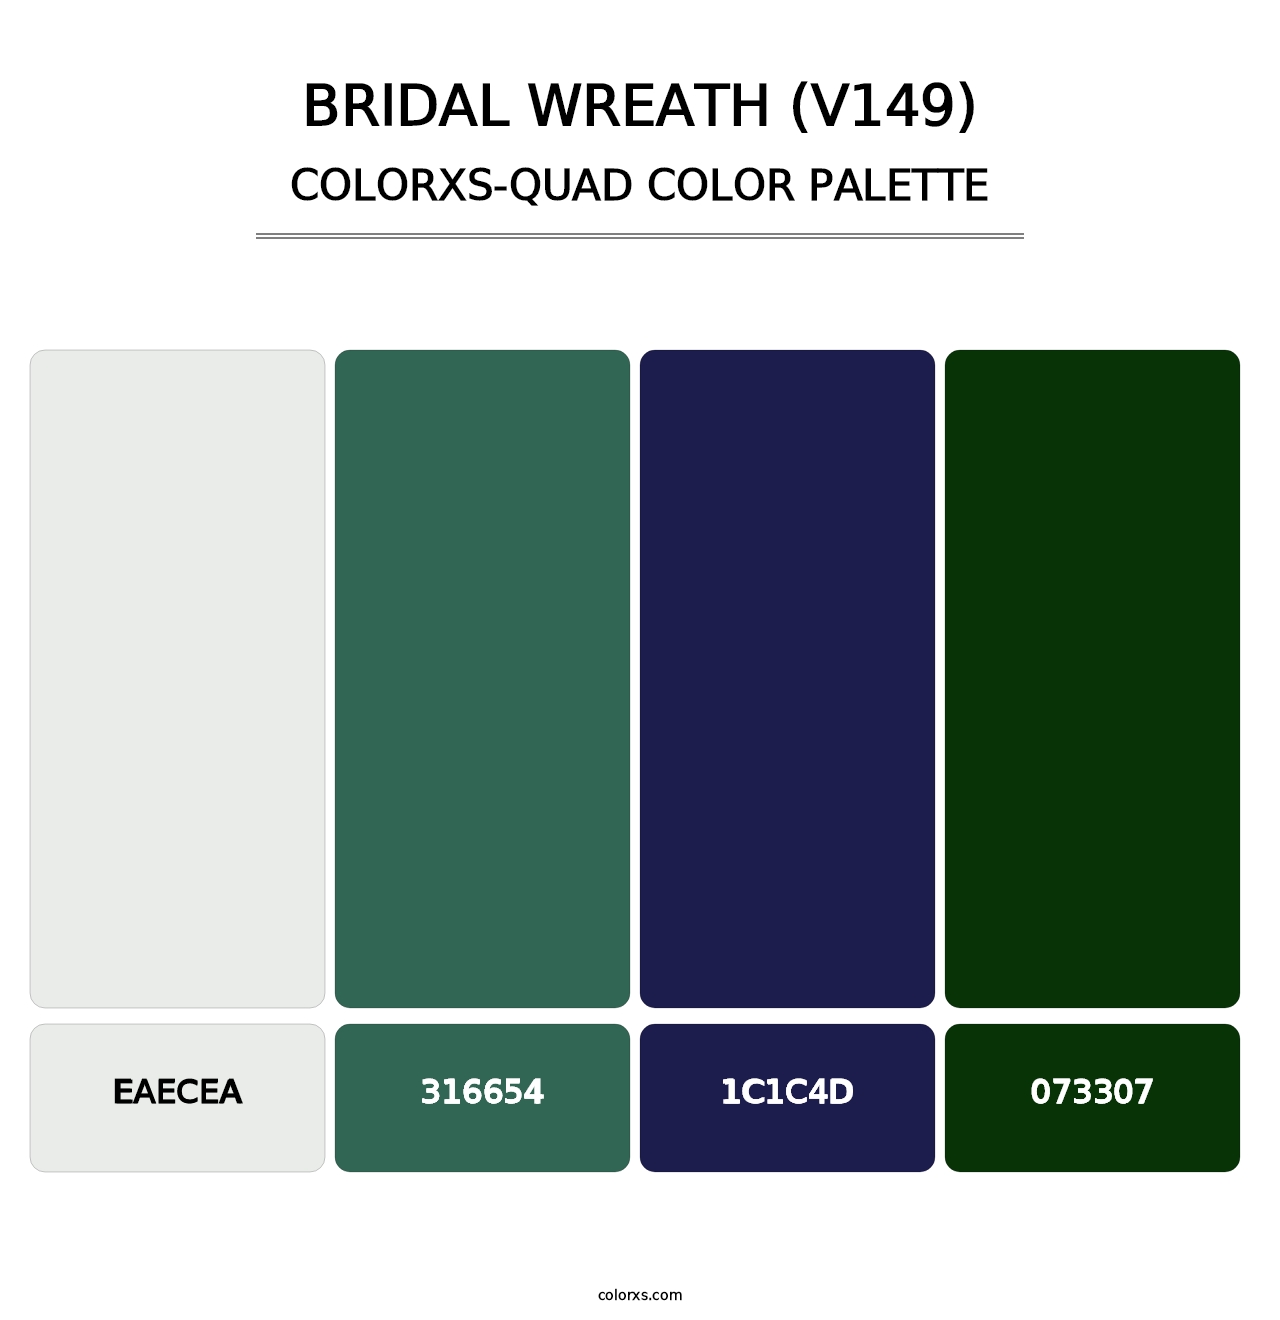 Bridal Wreath (V149) - Colorxs Quad Palette